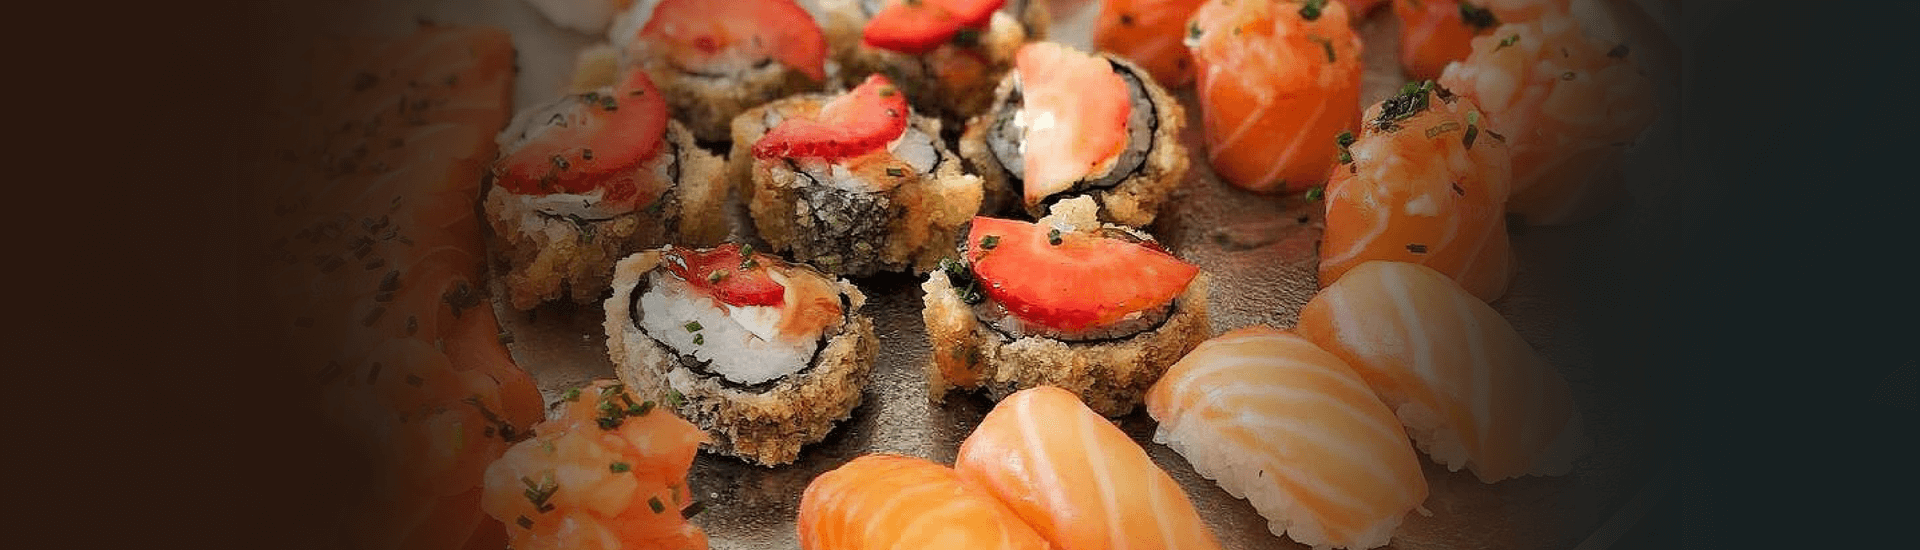 Hoje é um bom dia para experimentar Sushi em tua casa